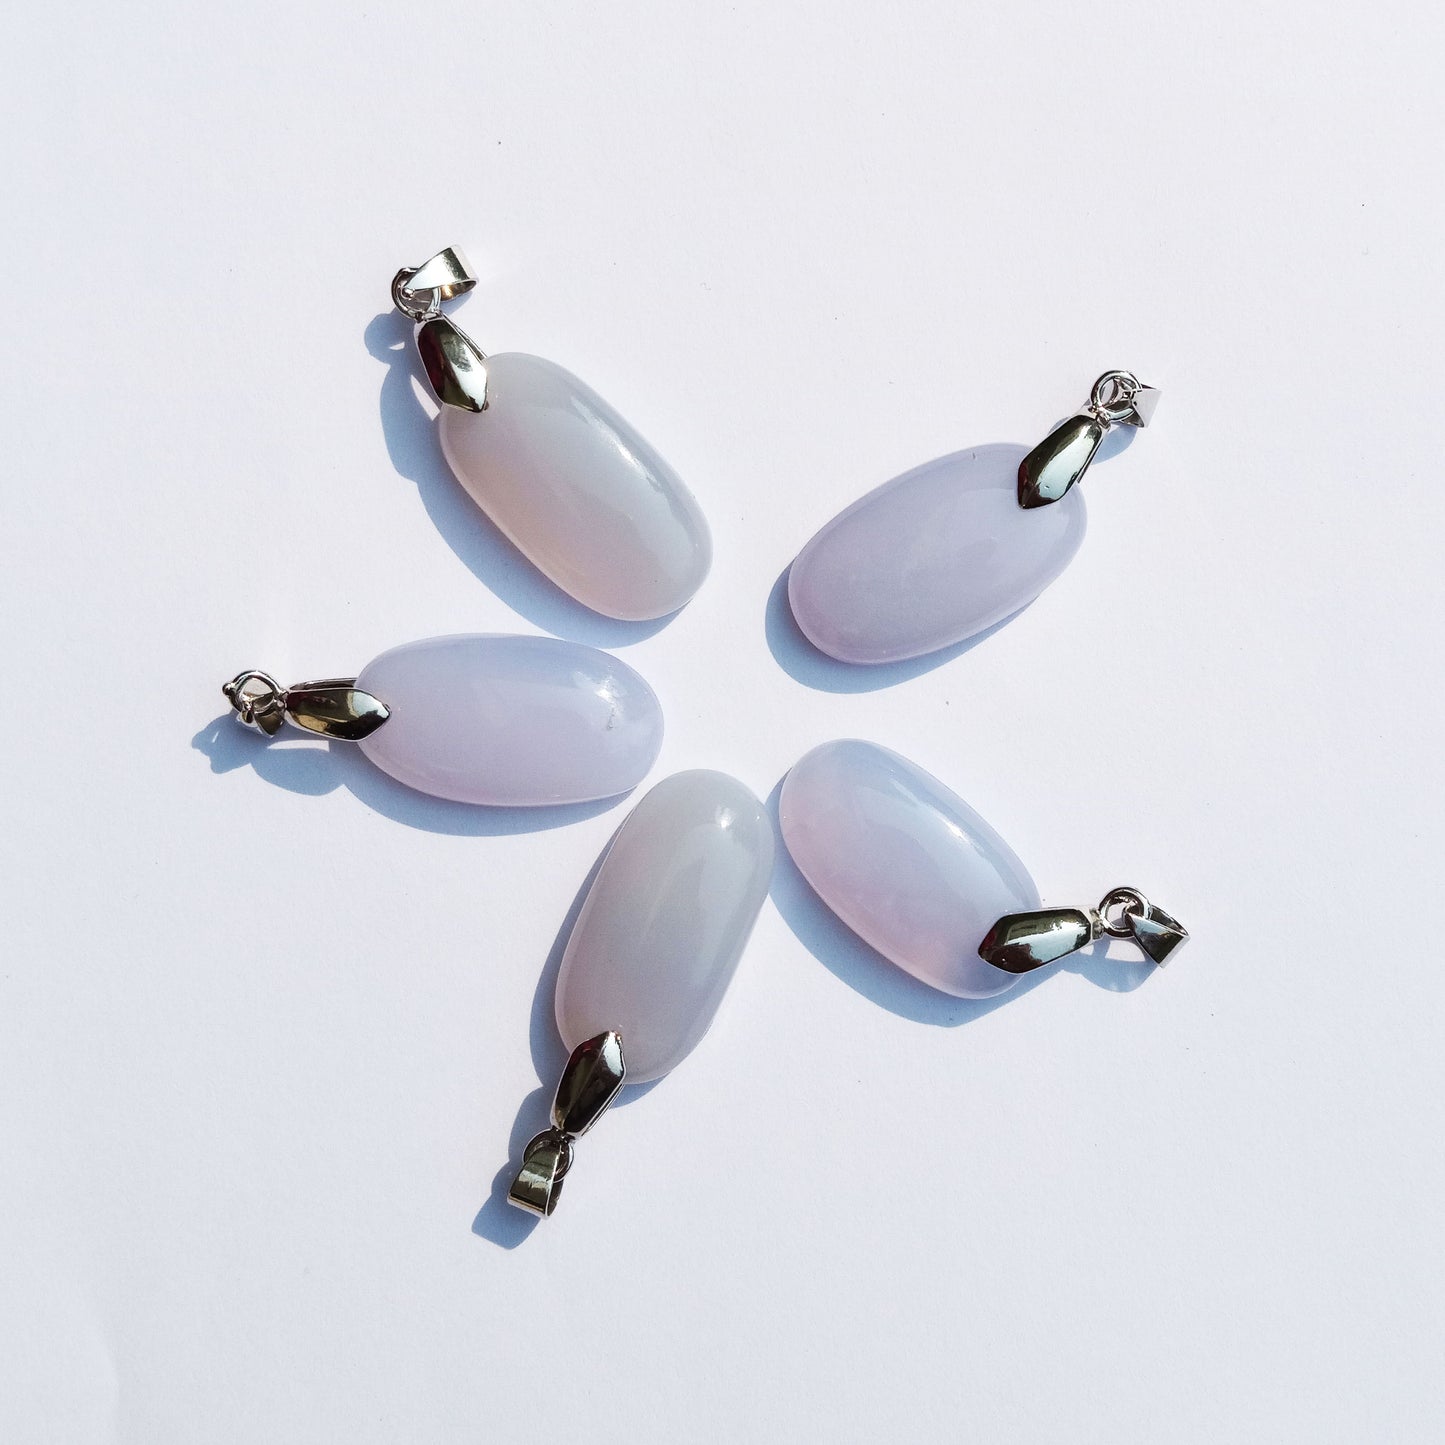 Hangers - Ovale vorm van witte agaat